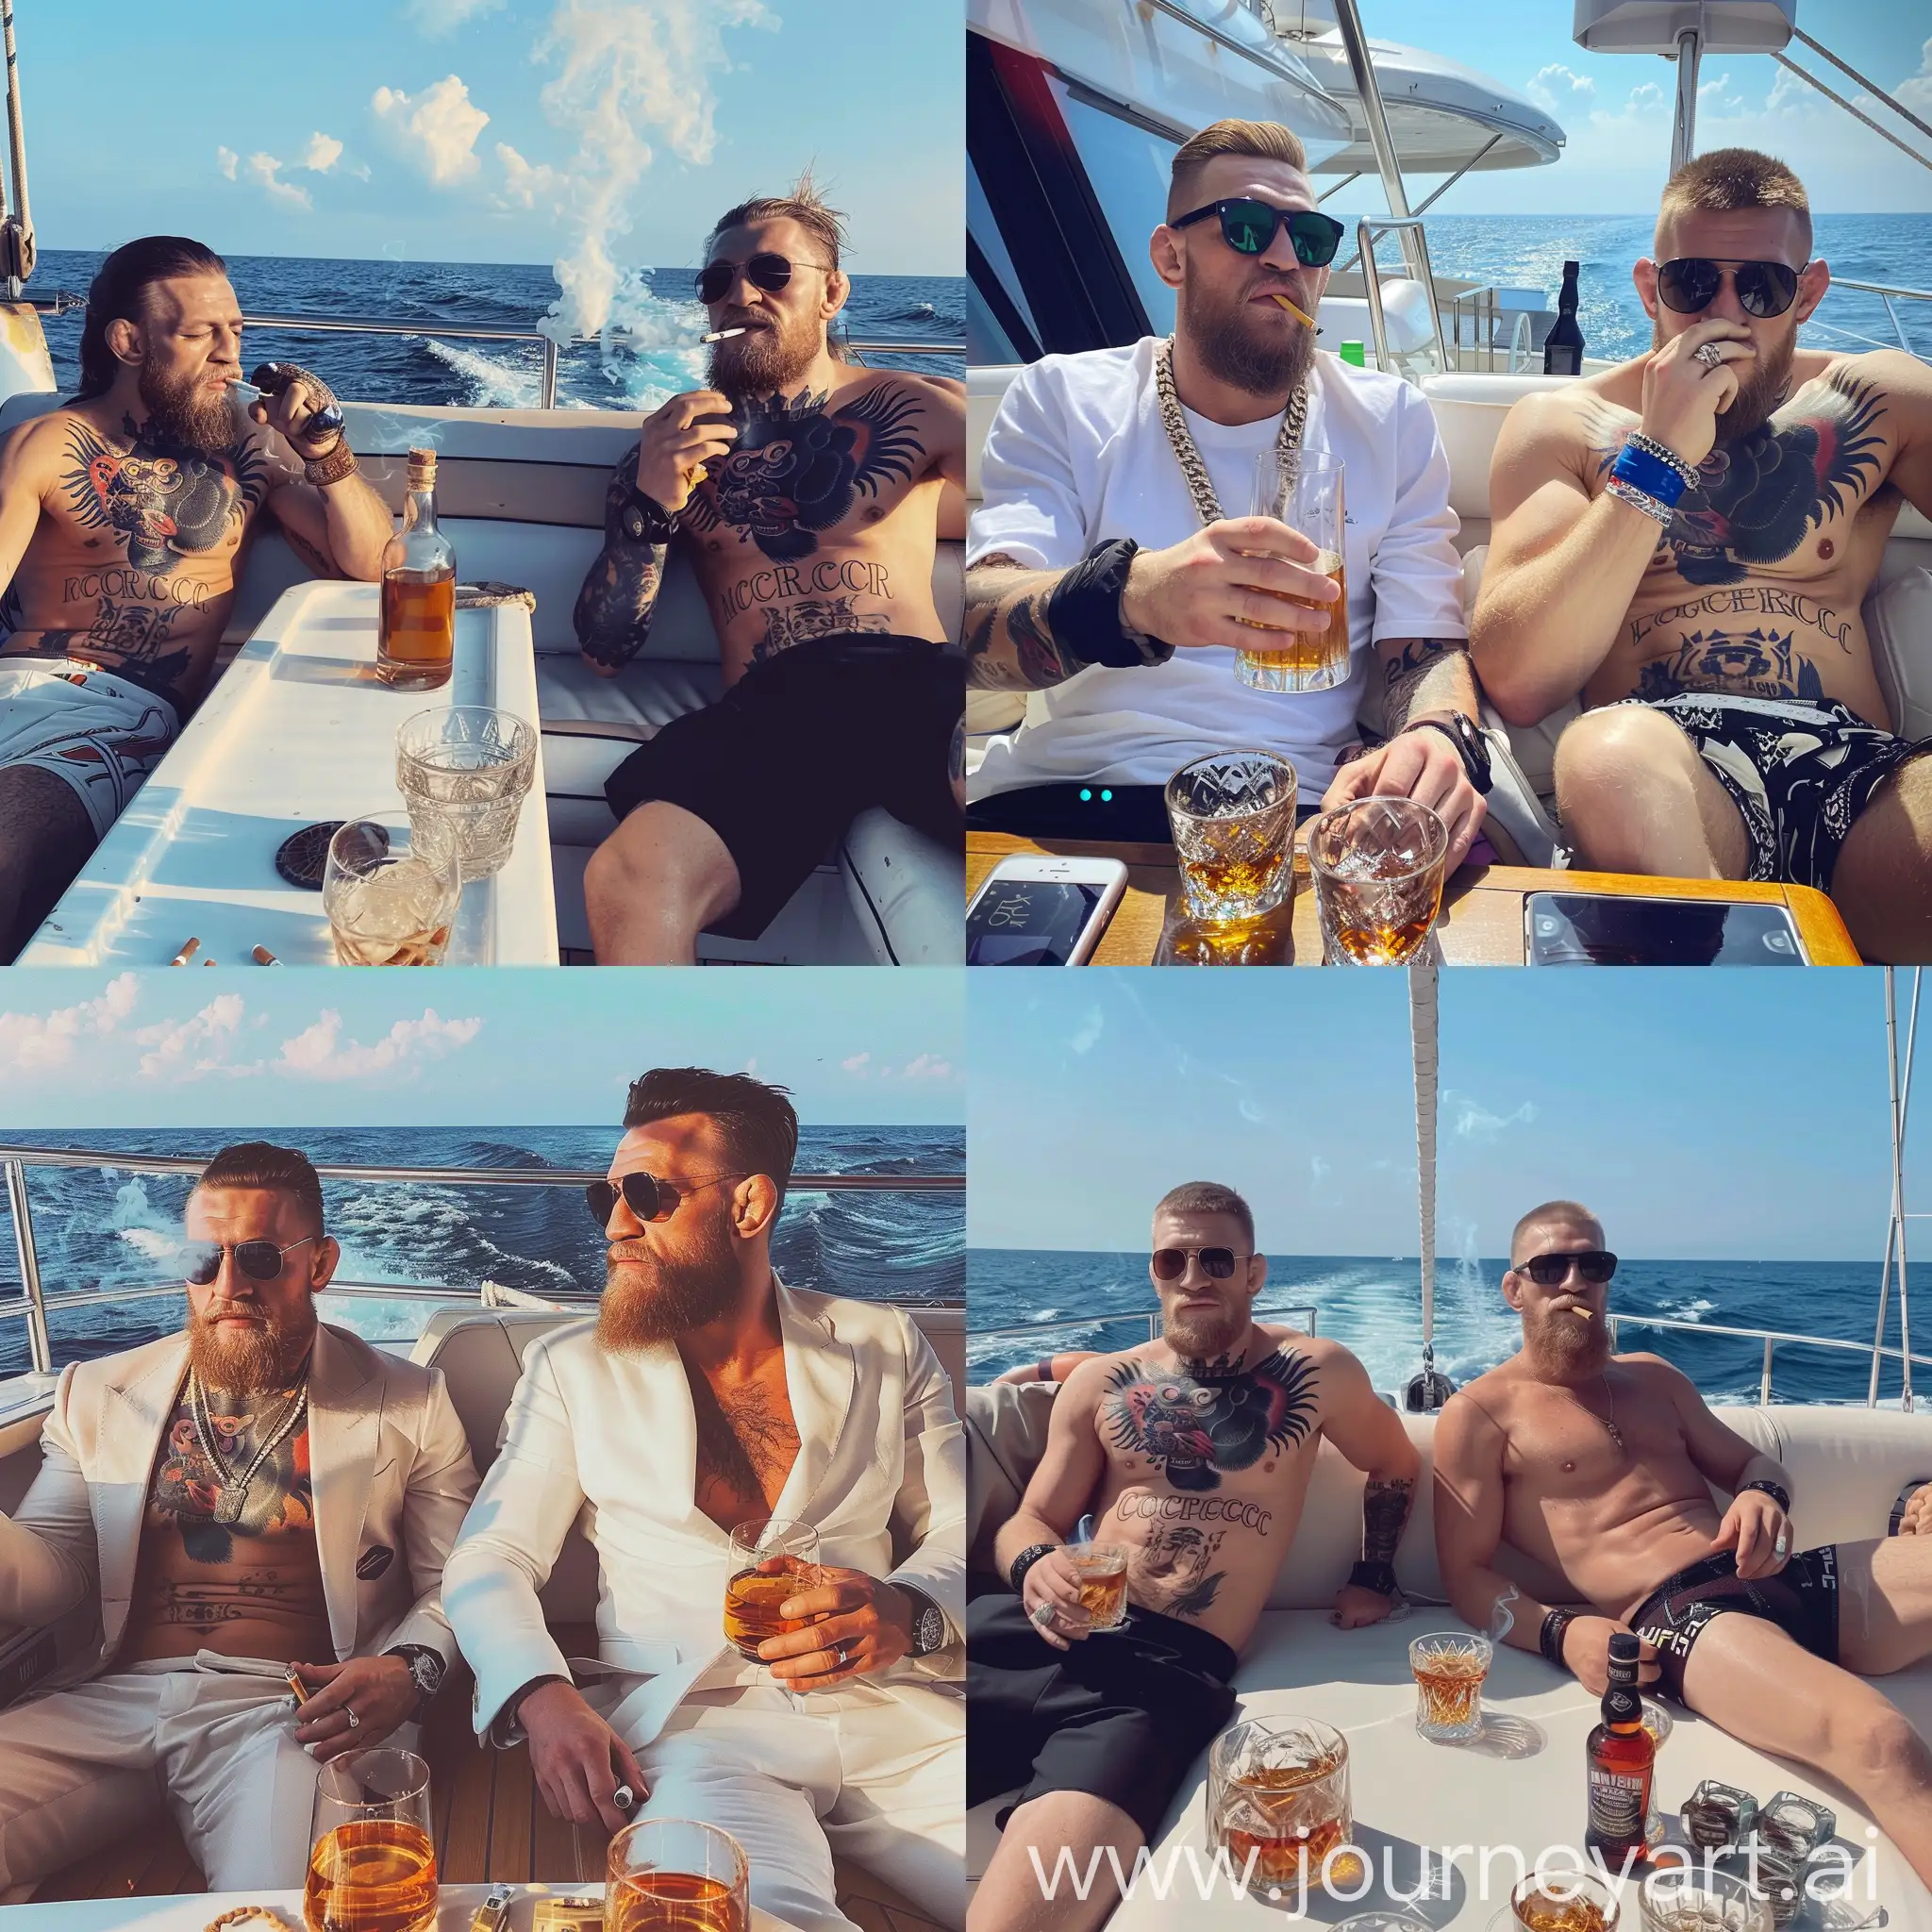 Коннор Магрегор отдыхает со своим другом на яхте
В крыму и они пьют виски и покуривают сигареллы



